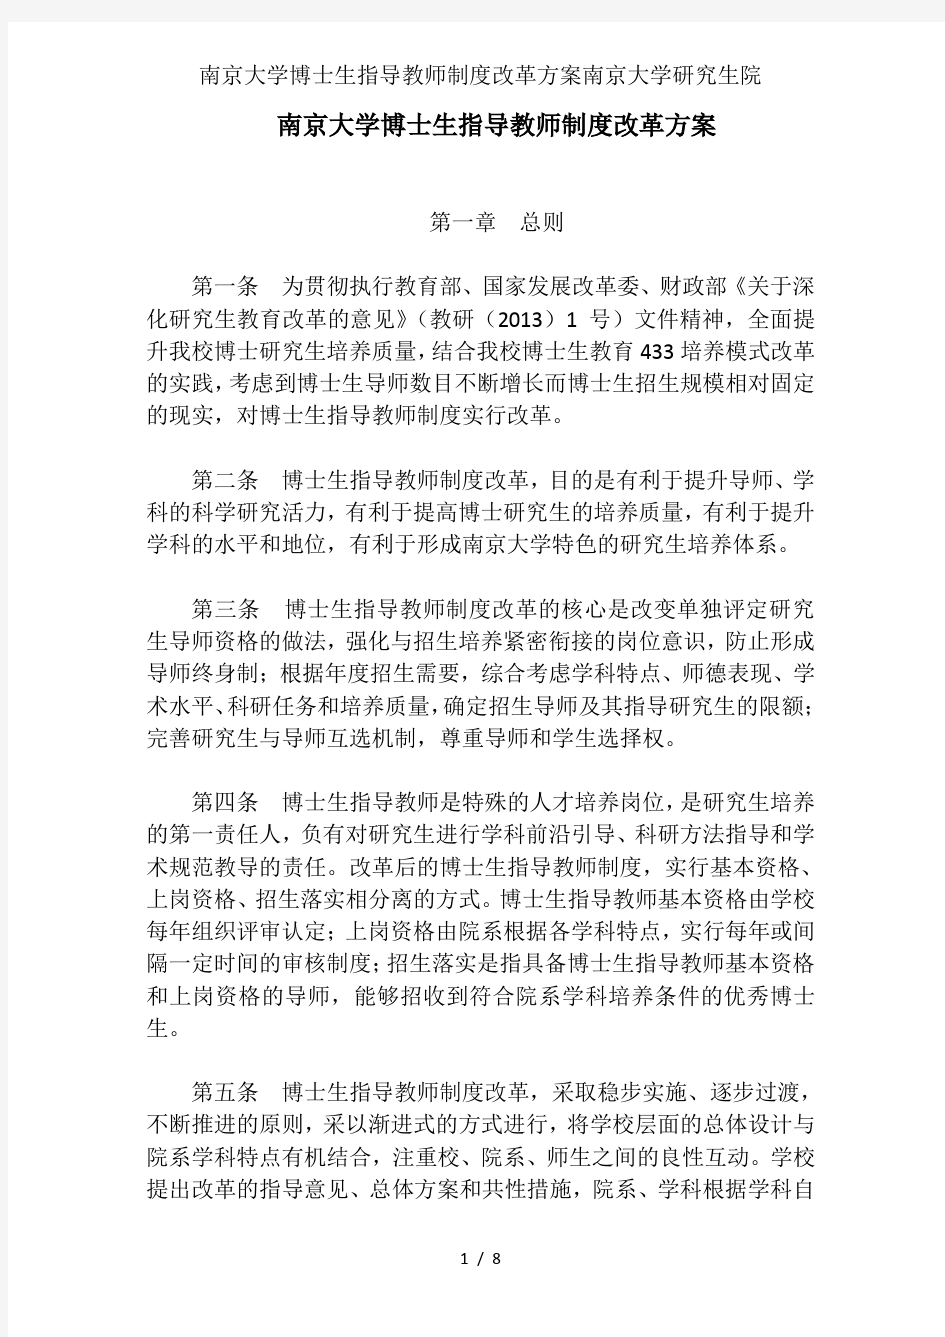 南京大学博士生指导教师制度改革方案南京大学研究生院